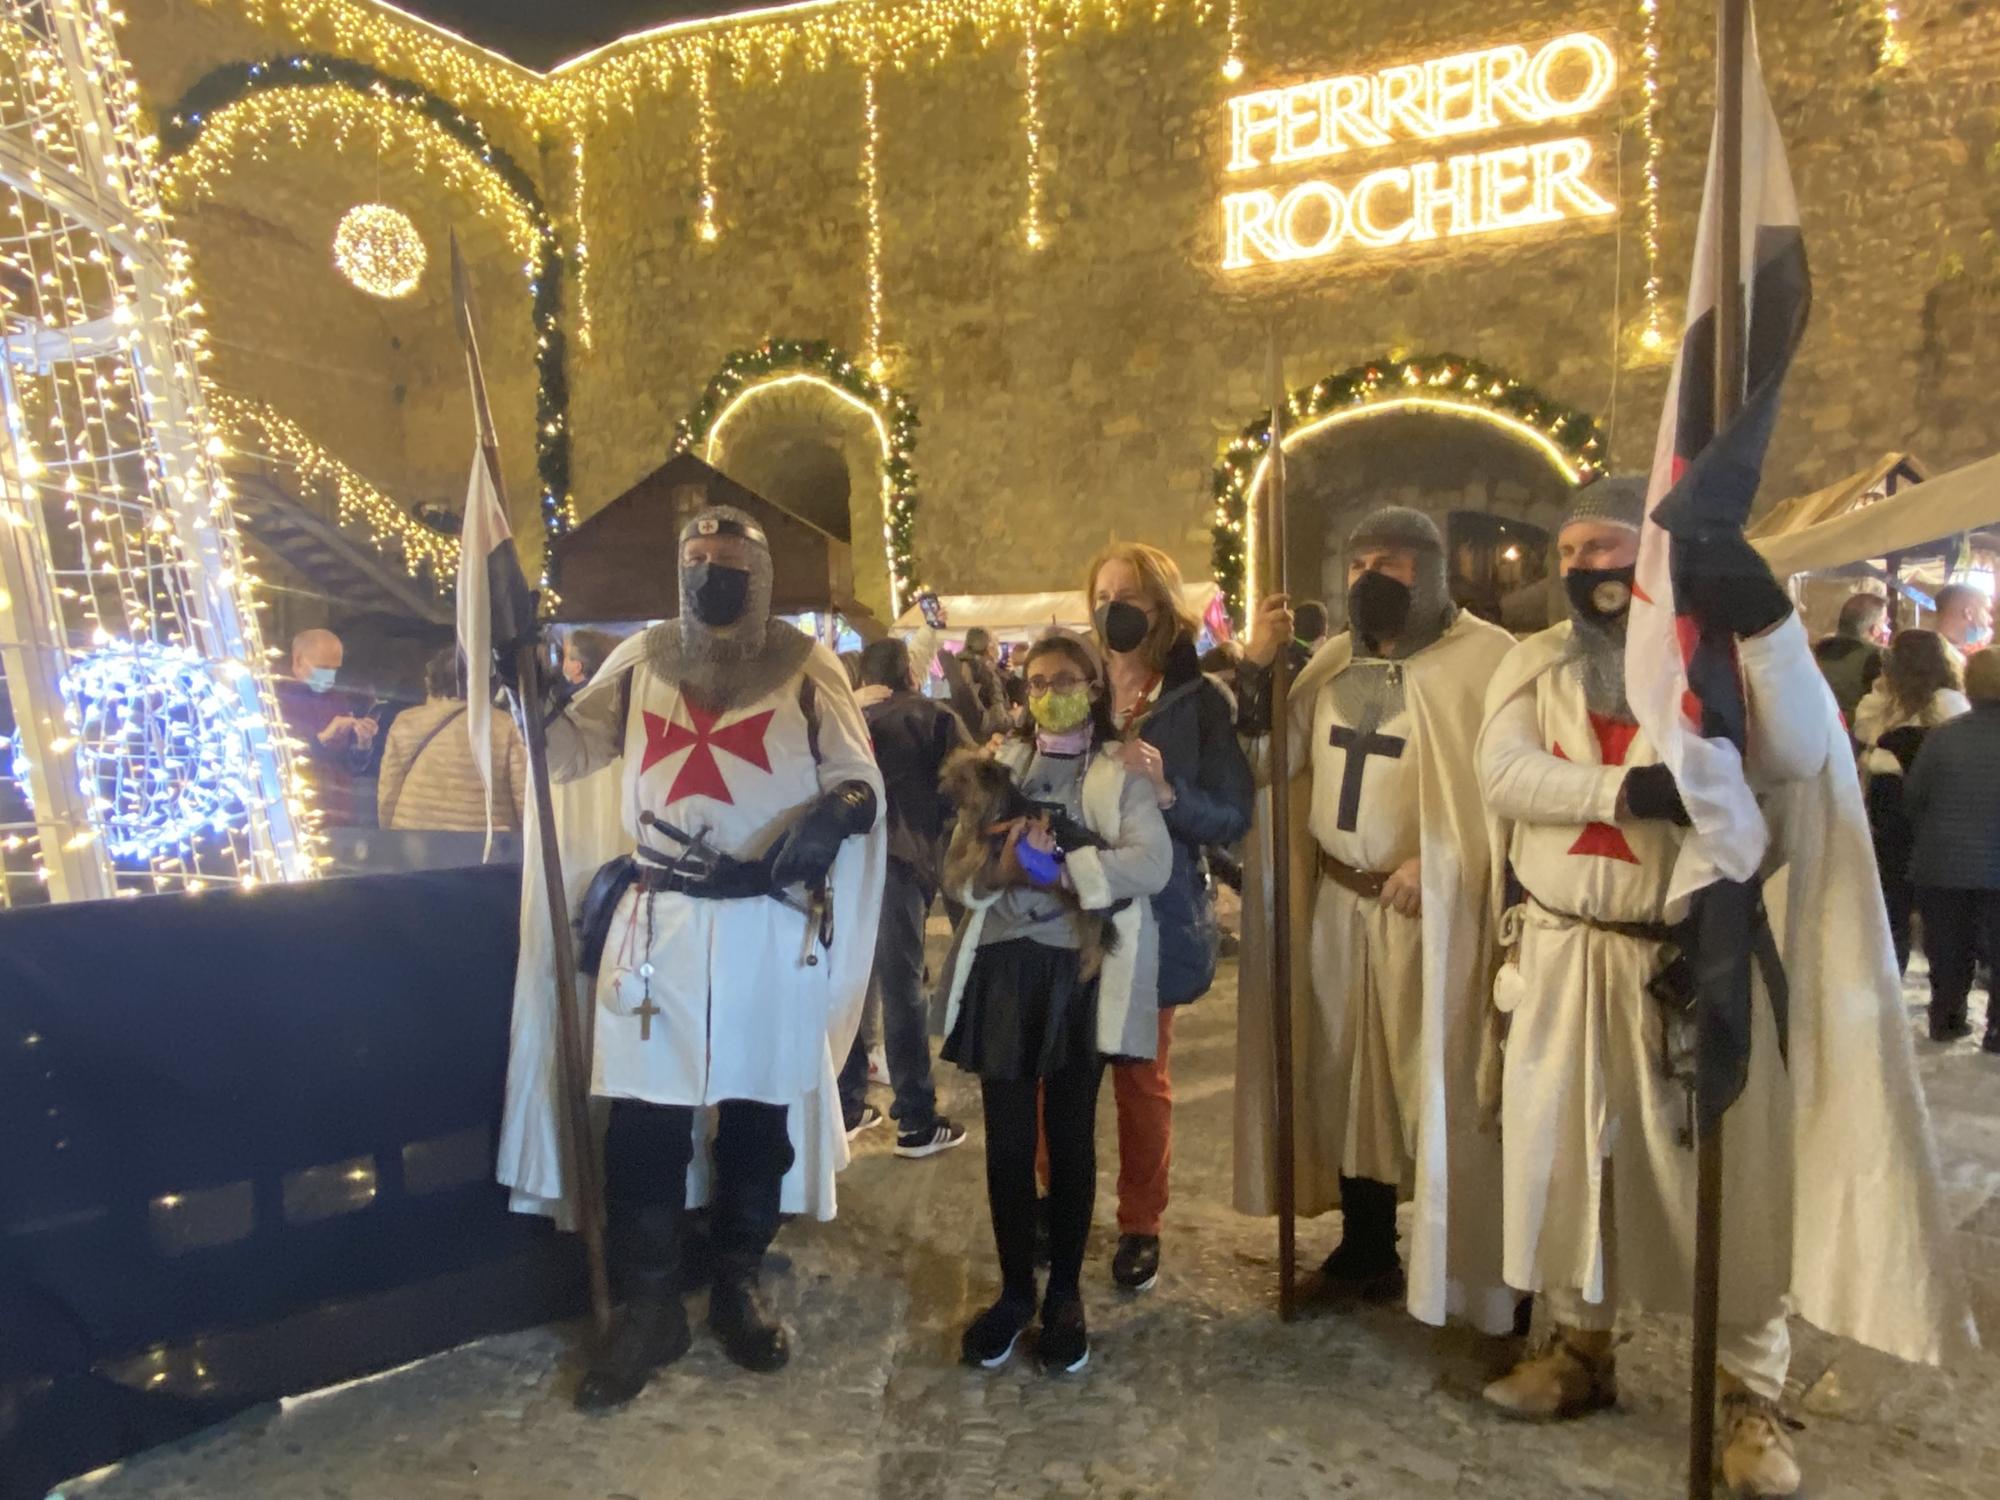 Fusión de luces e historia en Peñíscola con el mercado medieval y el alumbrado de Ferrero Rocher